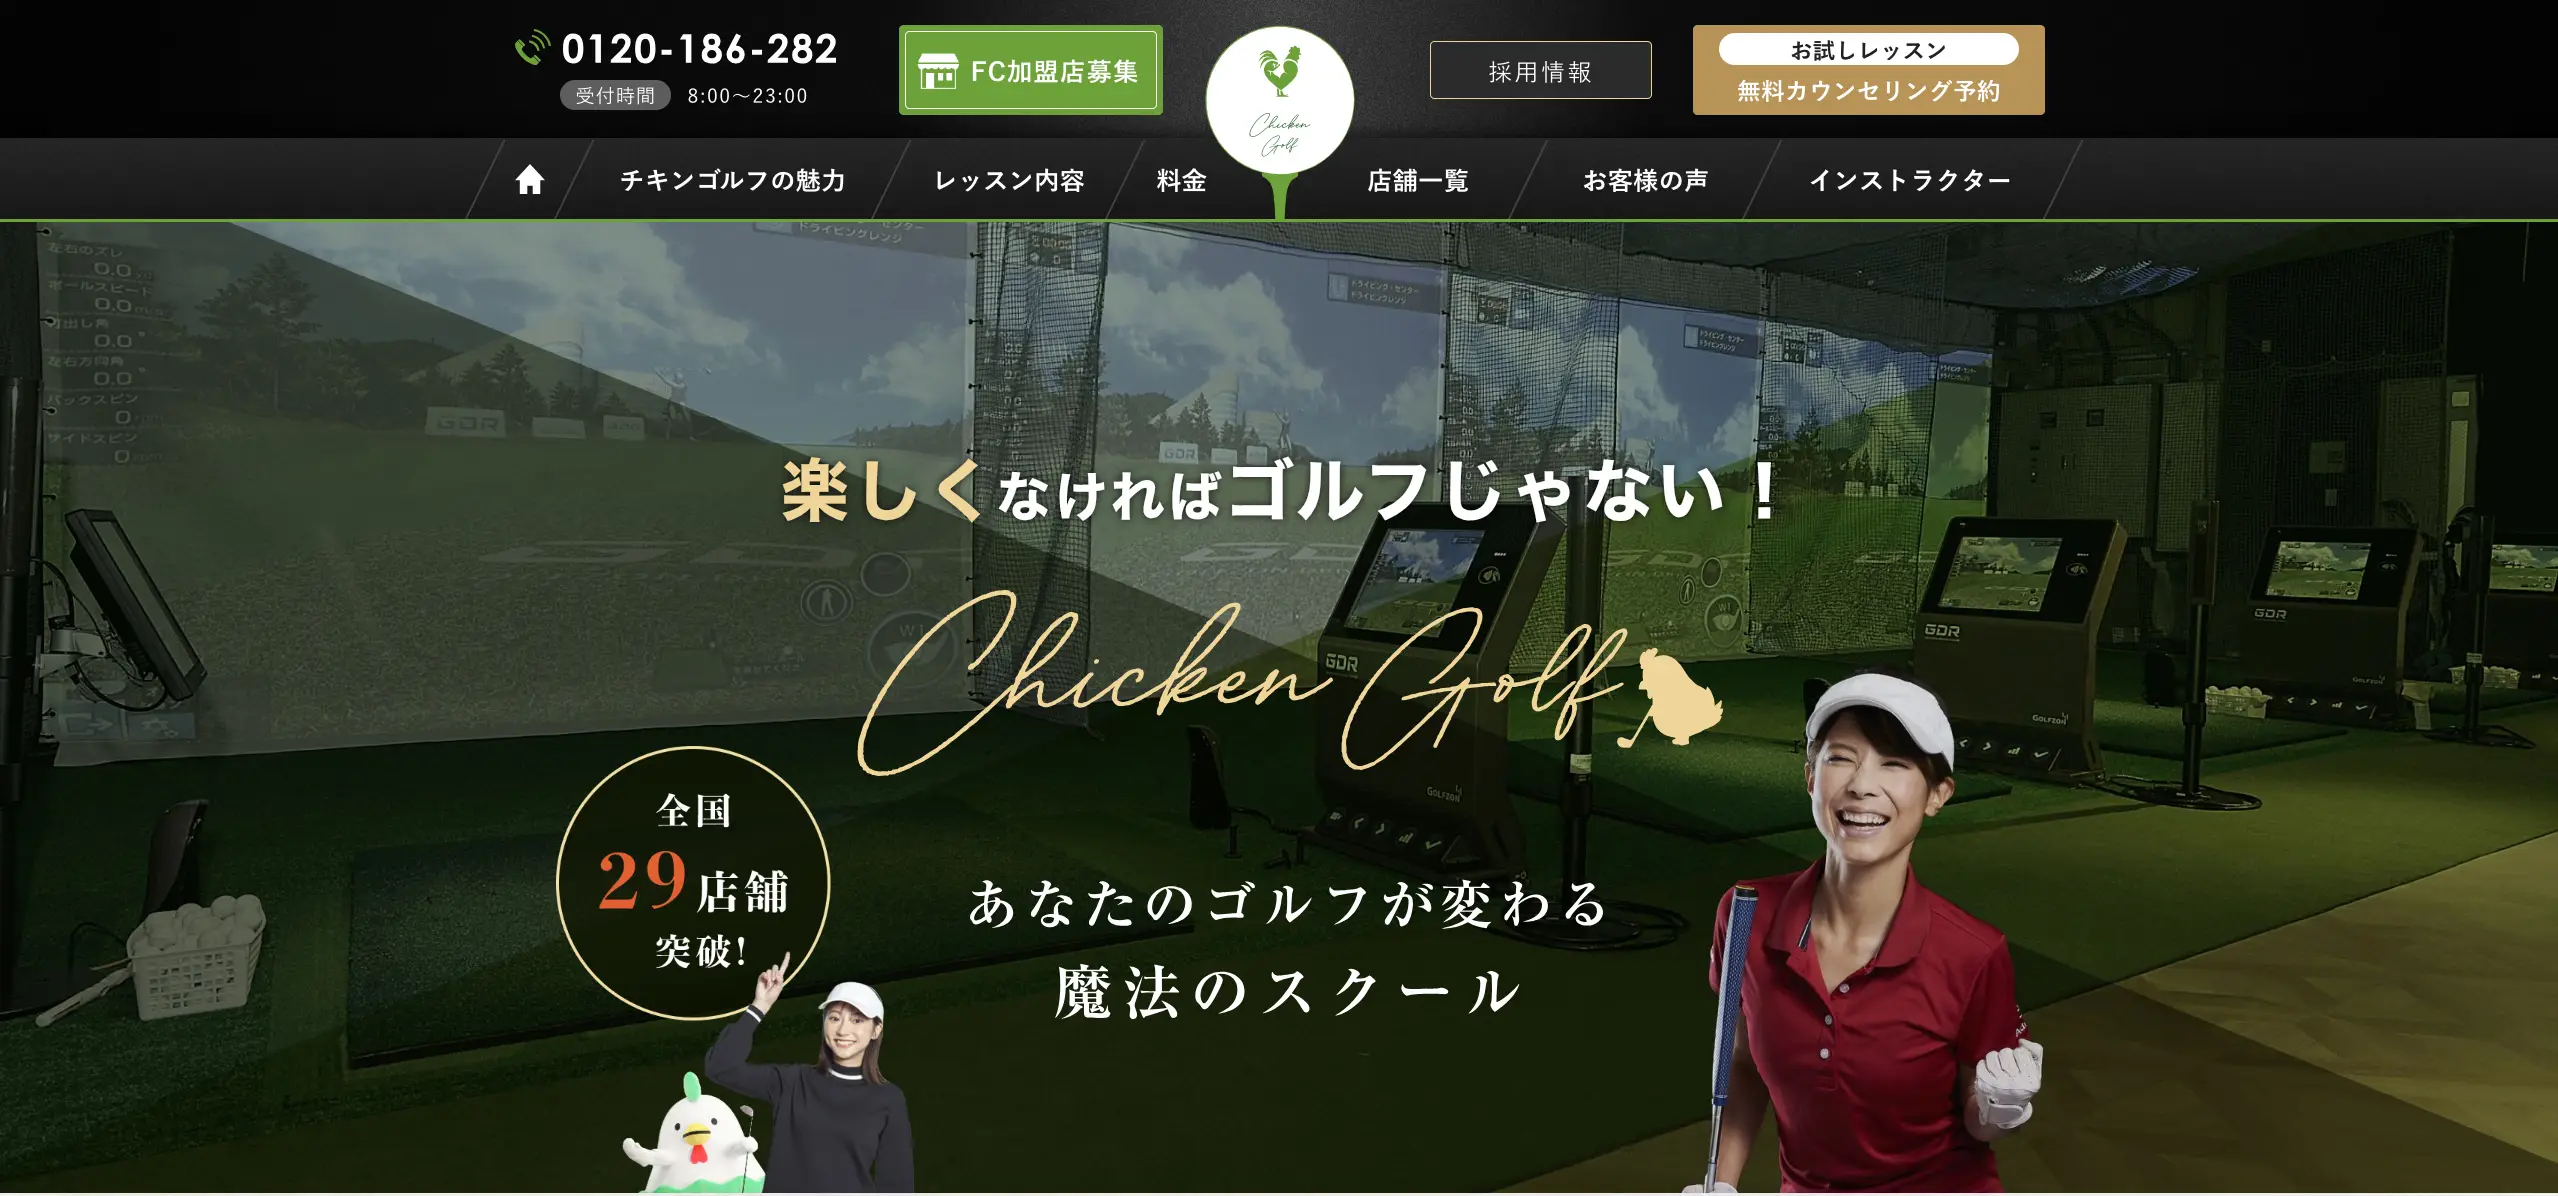 チキンゴルフ 札幌店